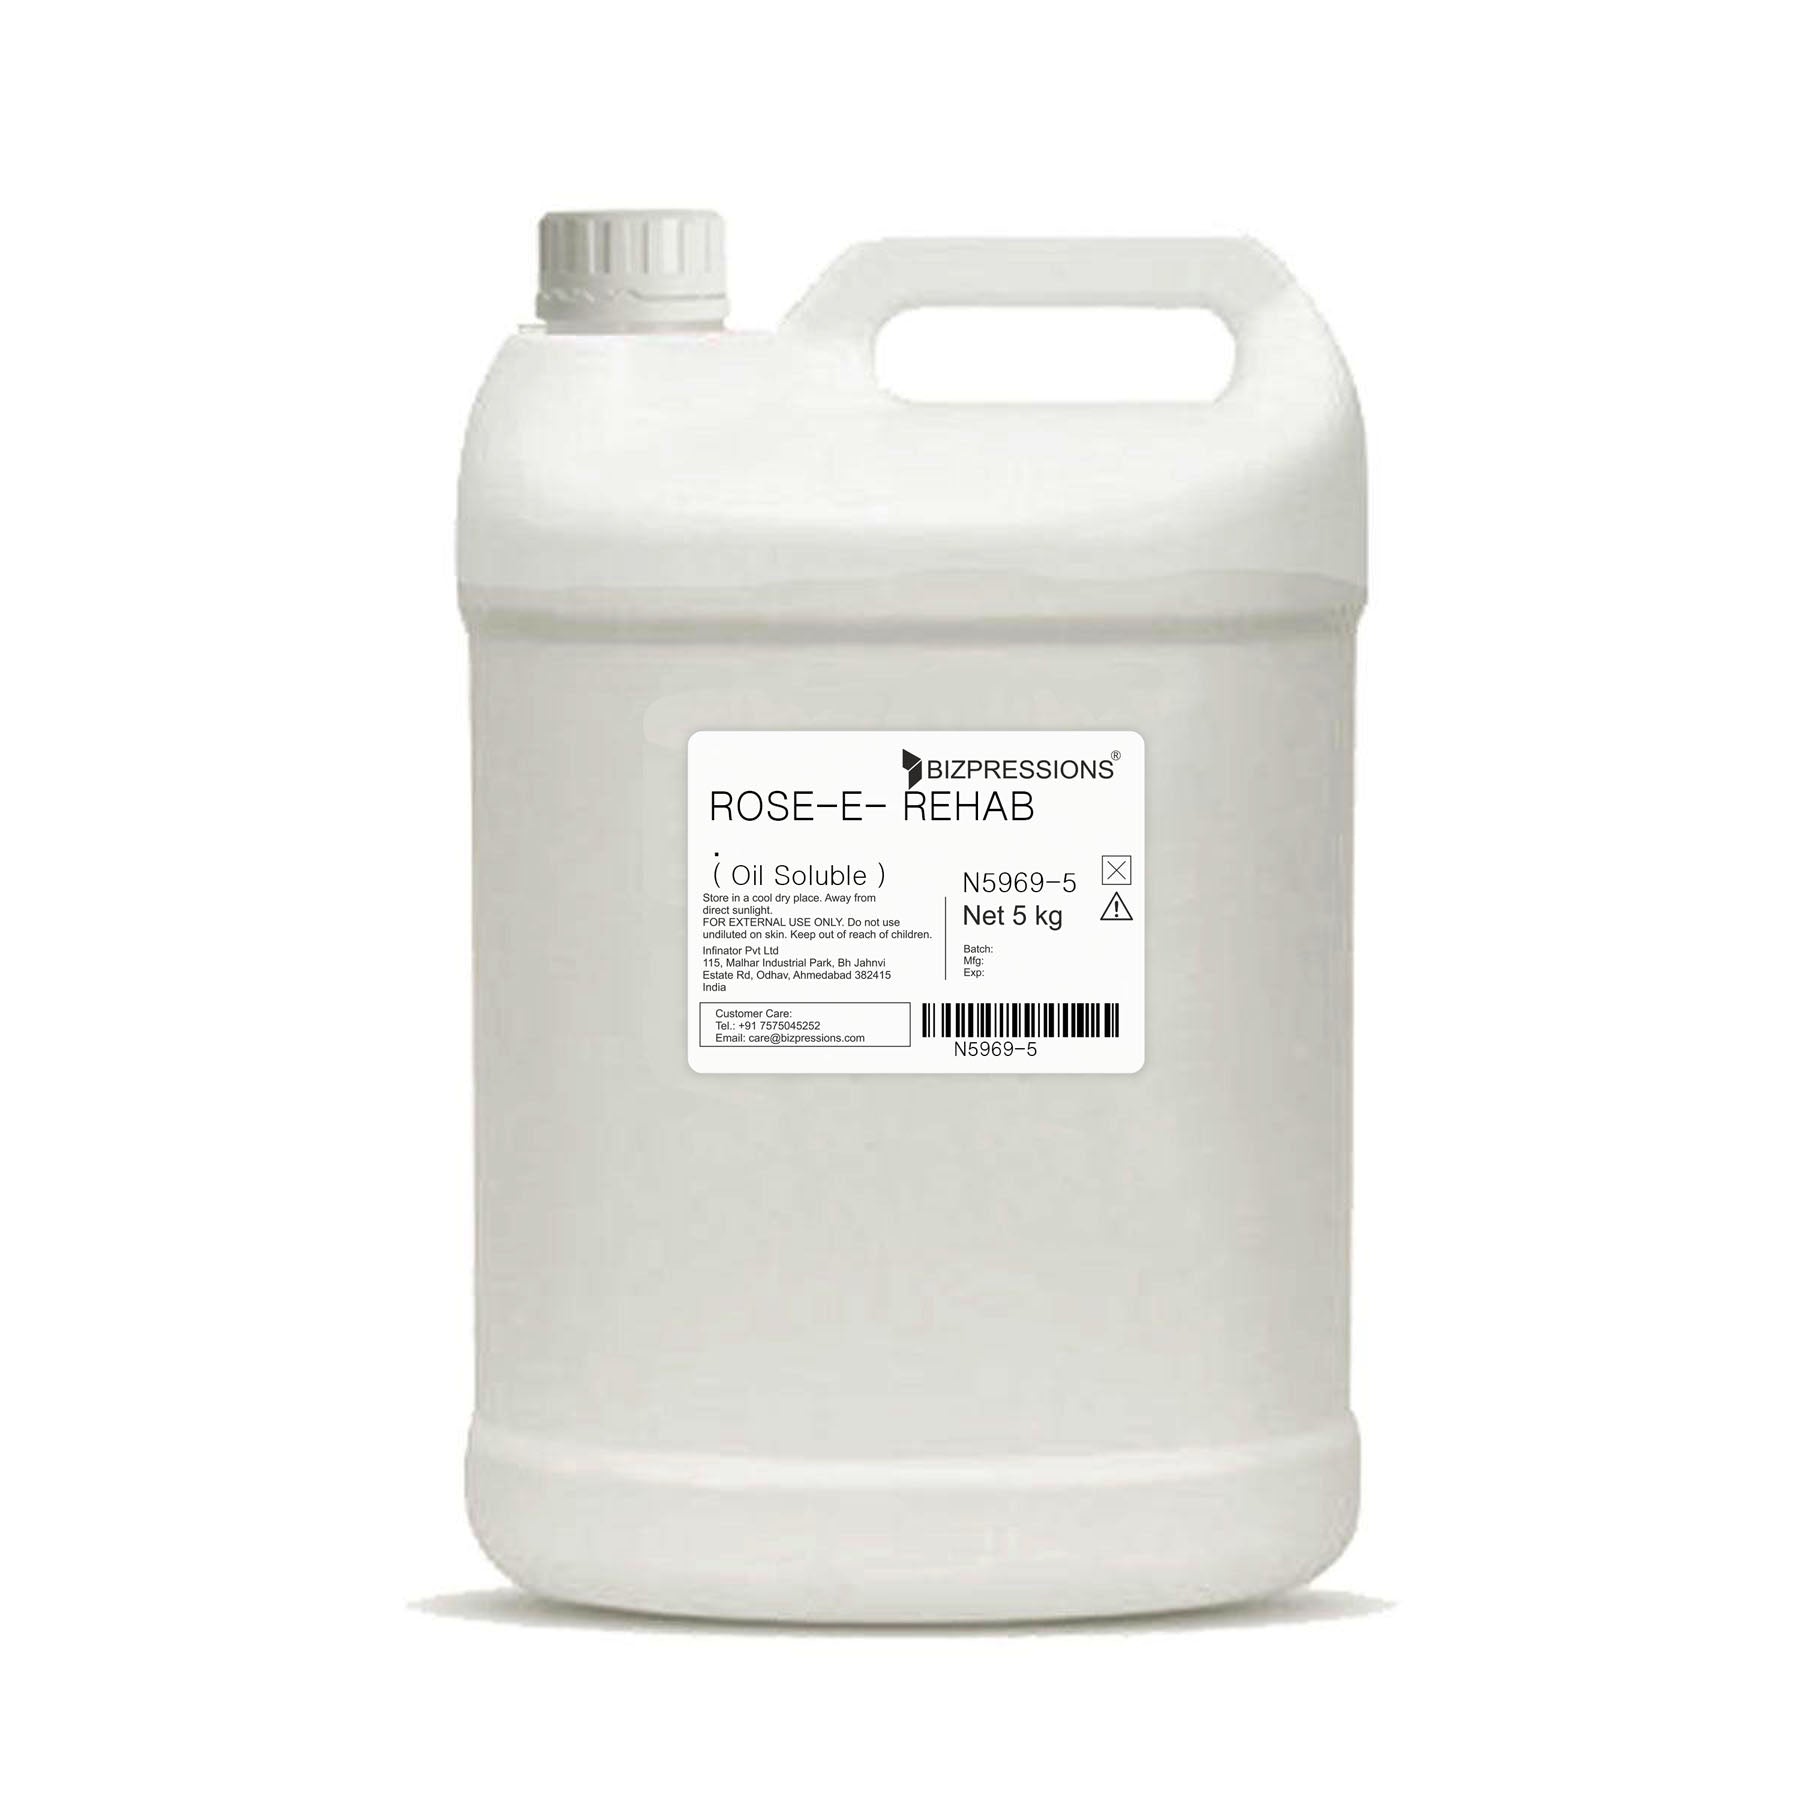 ROSE-E-REHAB - Fragrance ( Oil Soluble ) - 5 kg